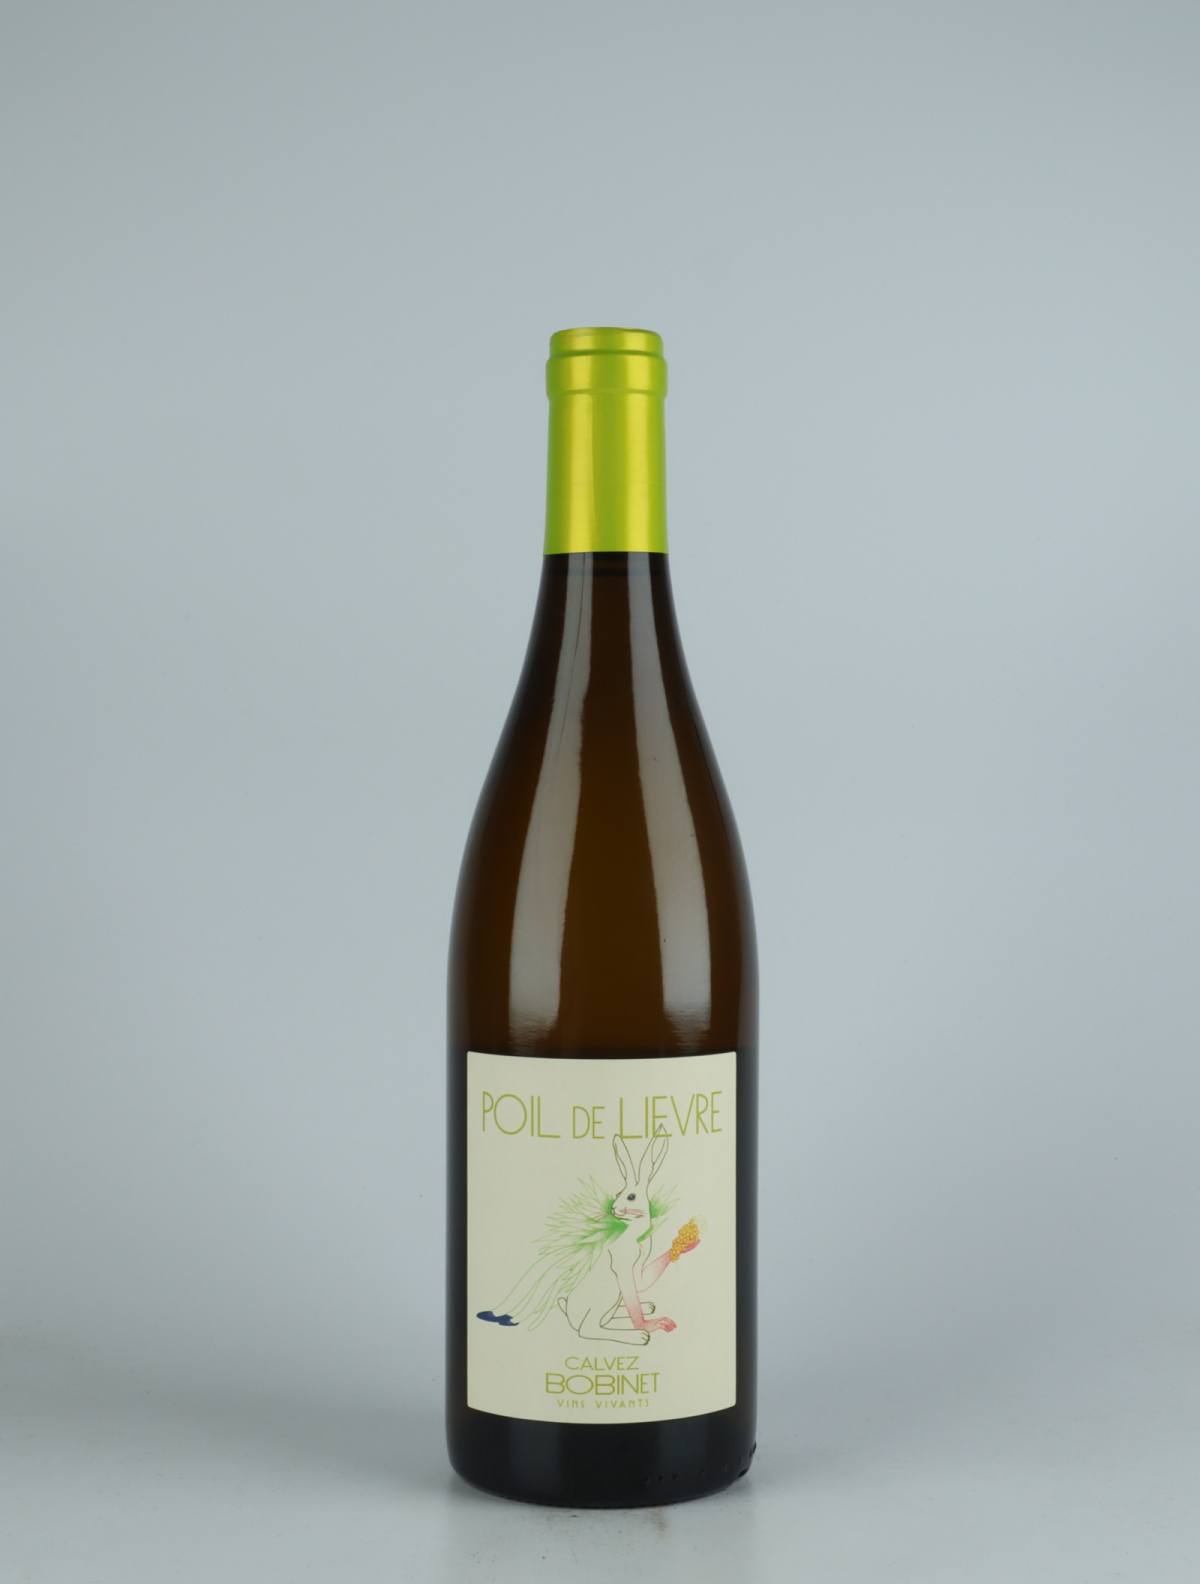 En flaske 2021 Saumur Blanc - Poil de Lièvre Hvidvin fra Domaine Bobinet, Loire i Frankrig